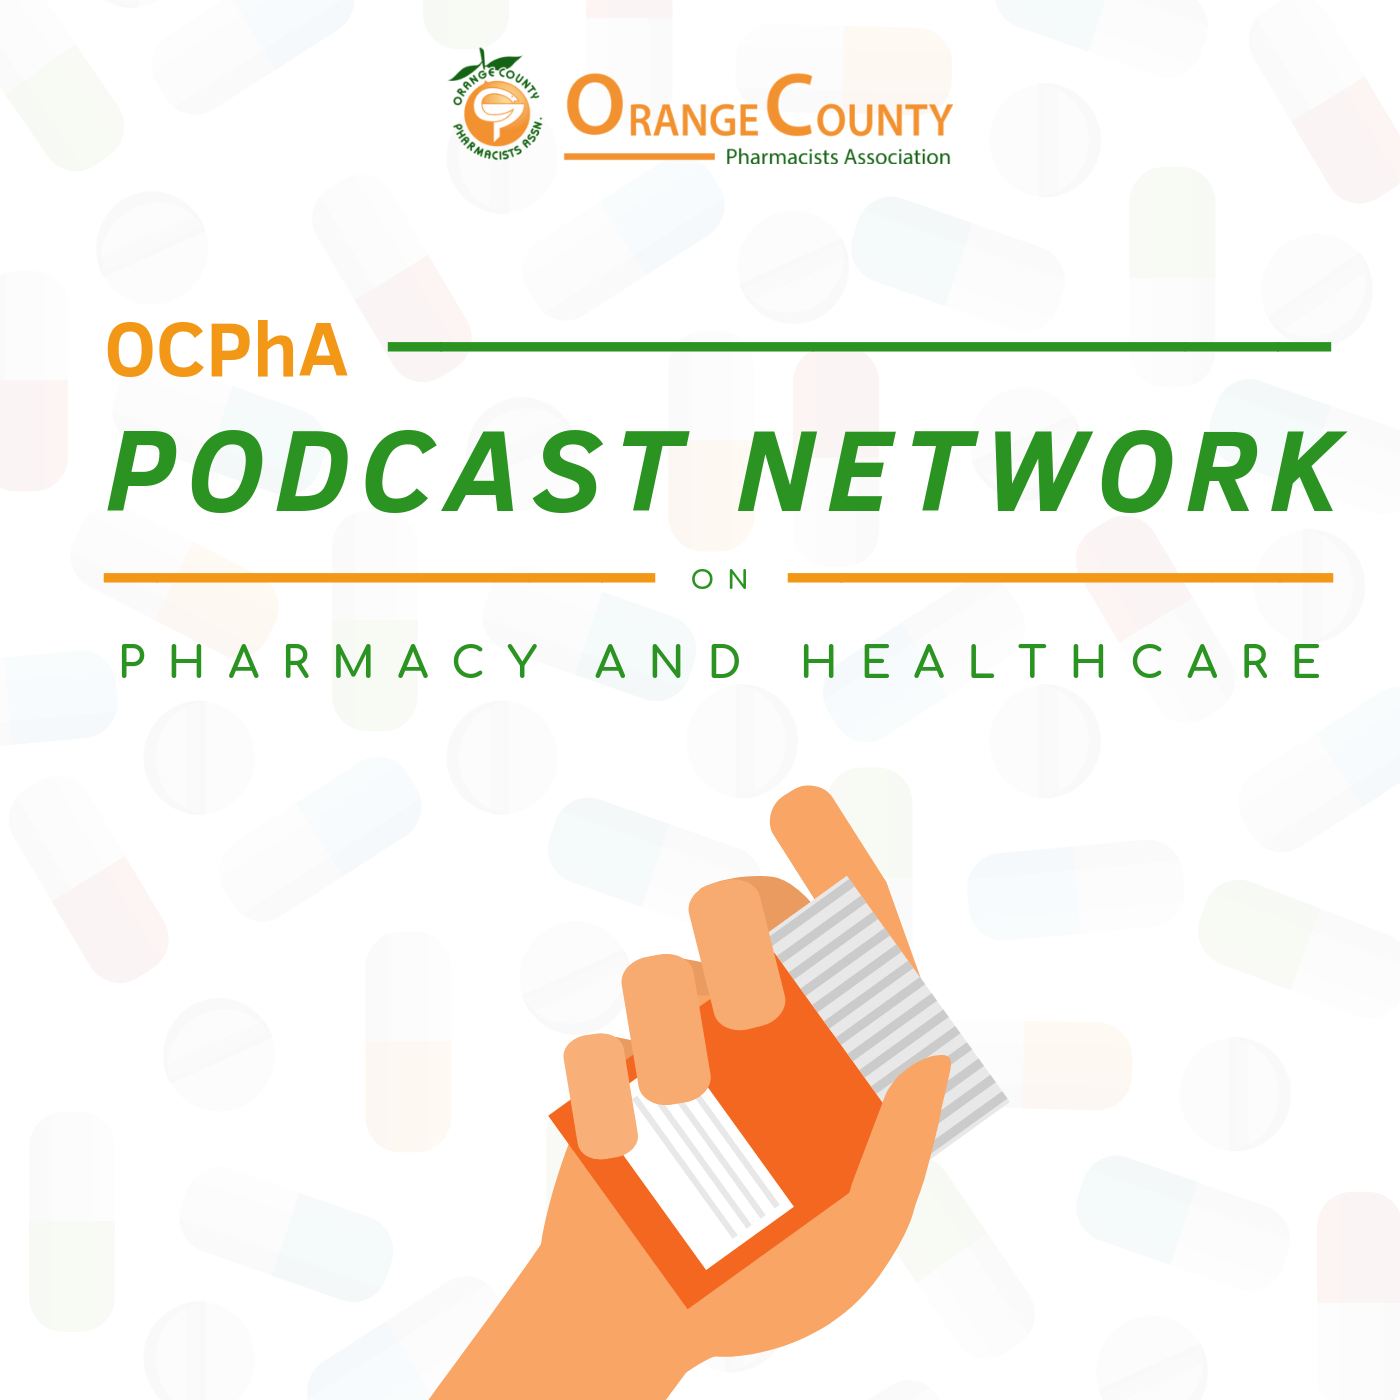 OCPhA Podcast Network